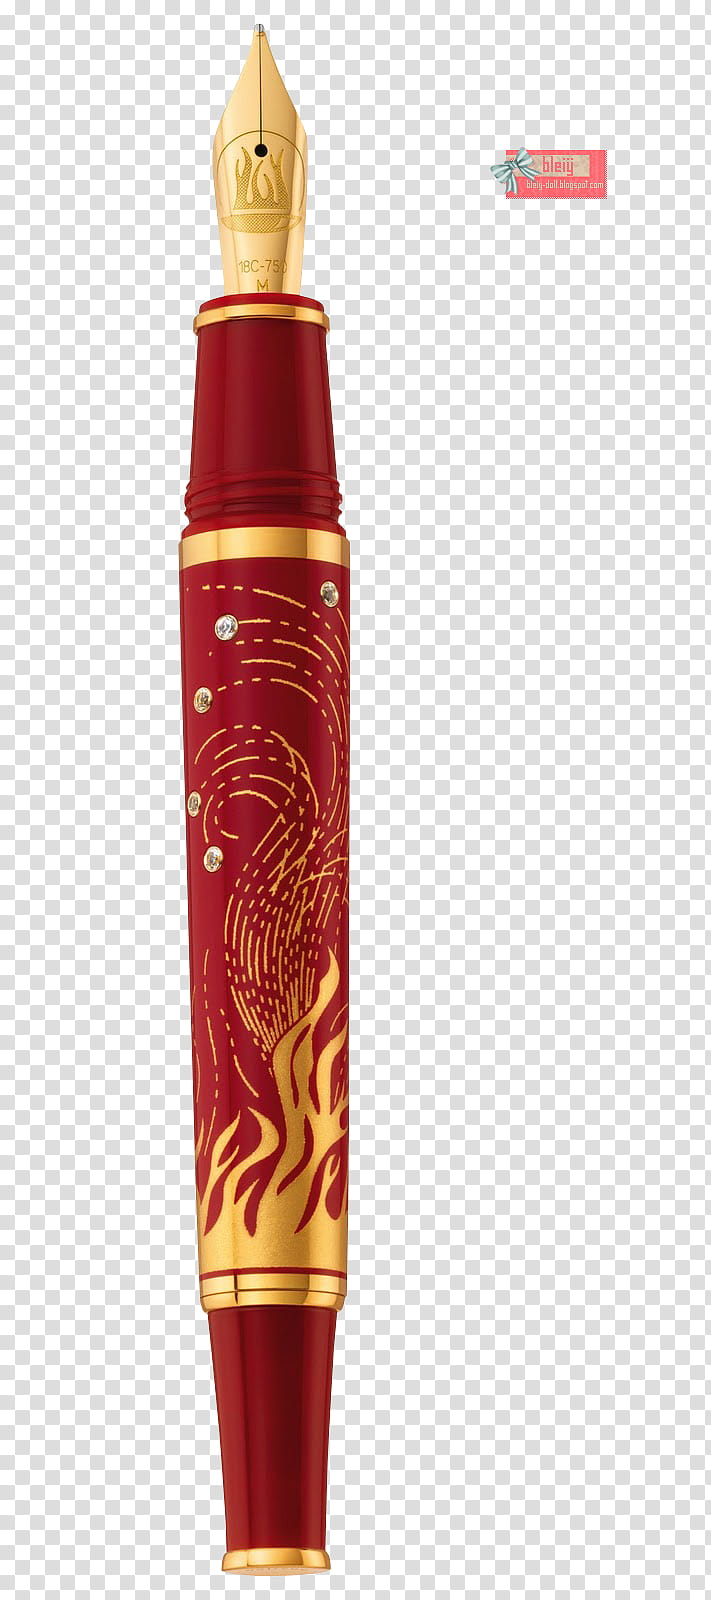 Pen Pelikan Fire transparent background PNG clipart